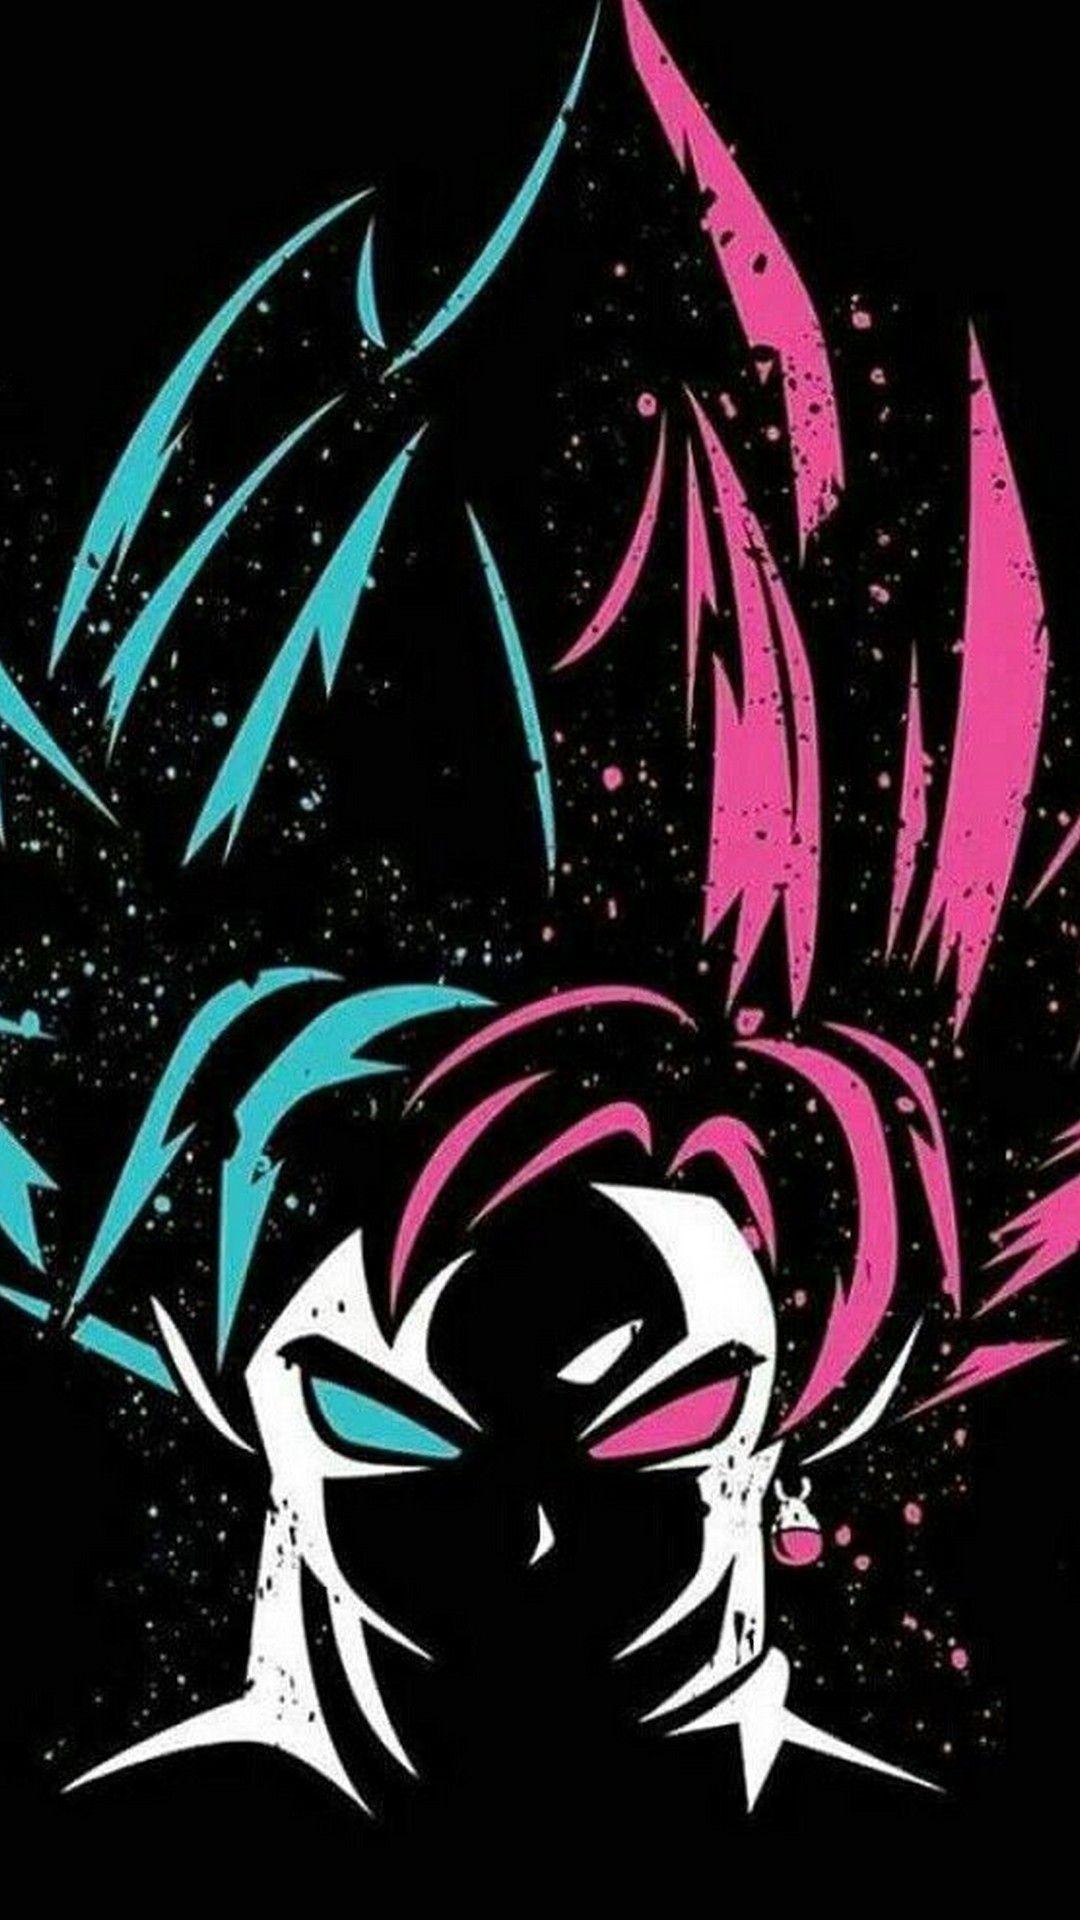 Badass Black Goku Wallpapers - Top Free Badass Black Goku ...